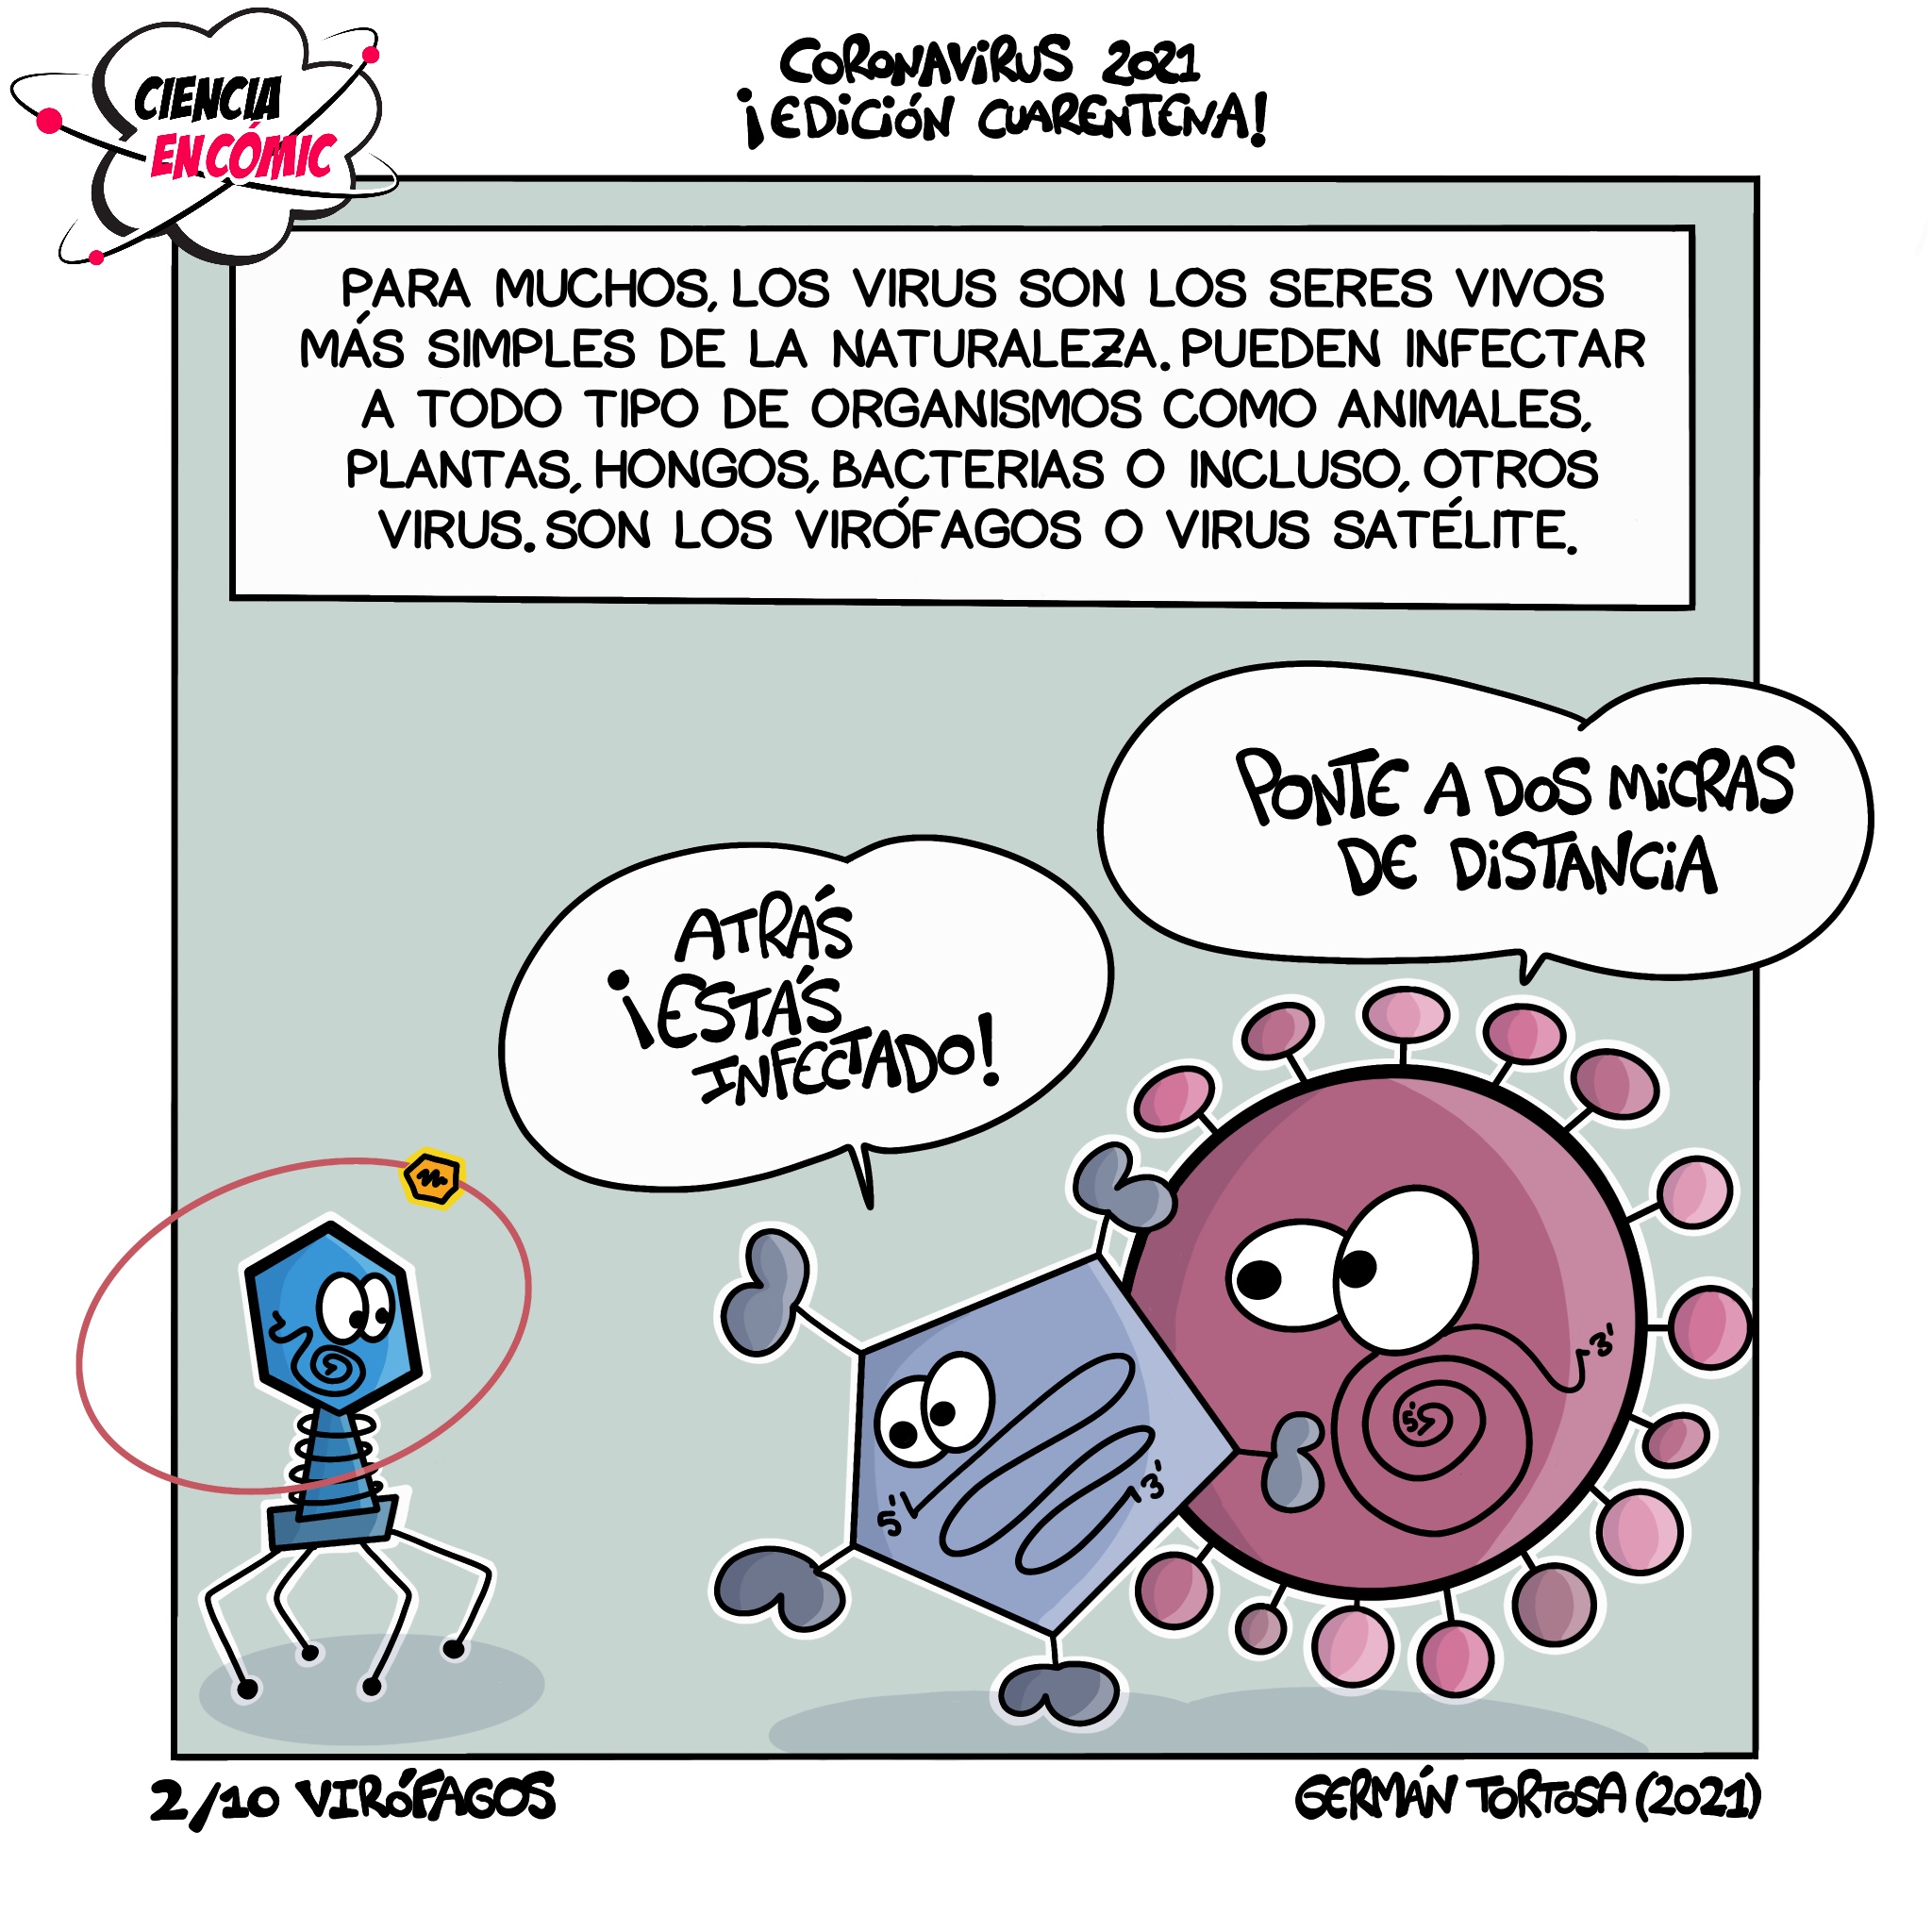 Virófagos (Especial cuarentena COVID)